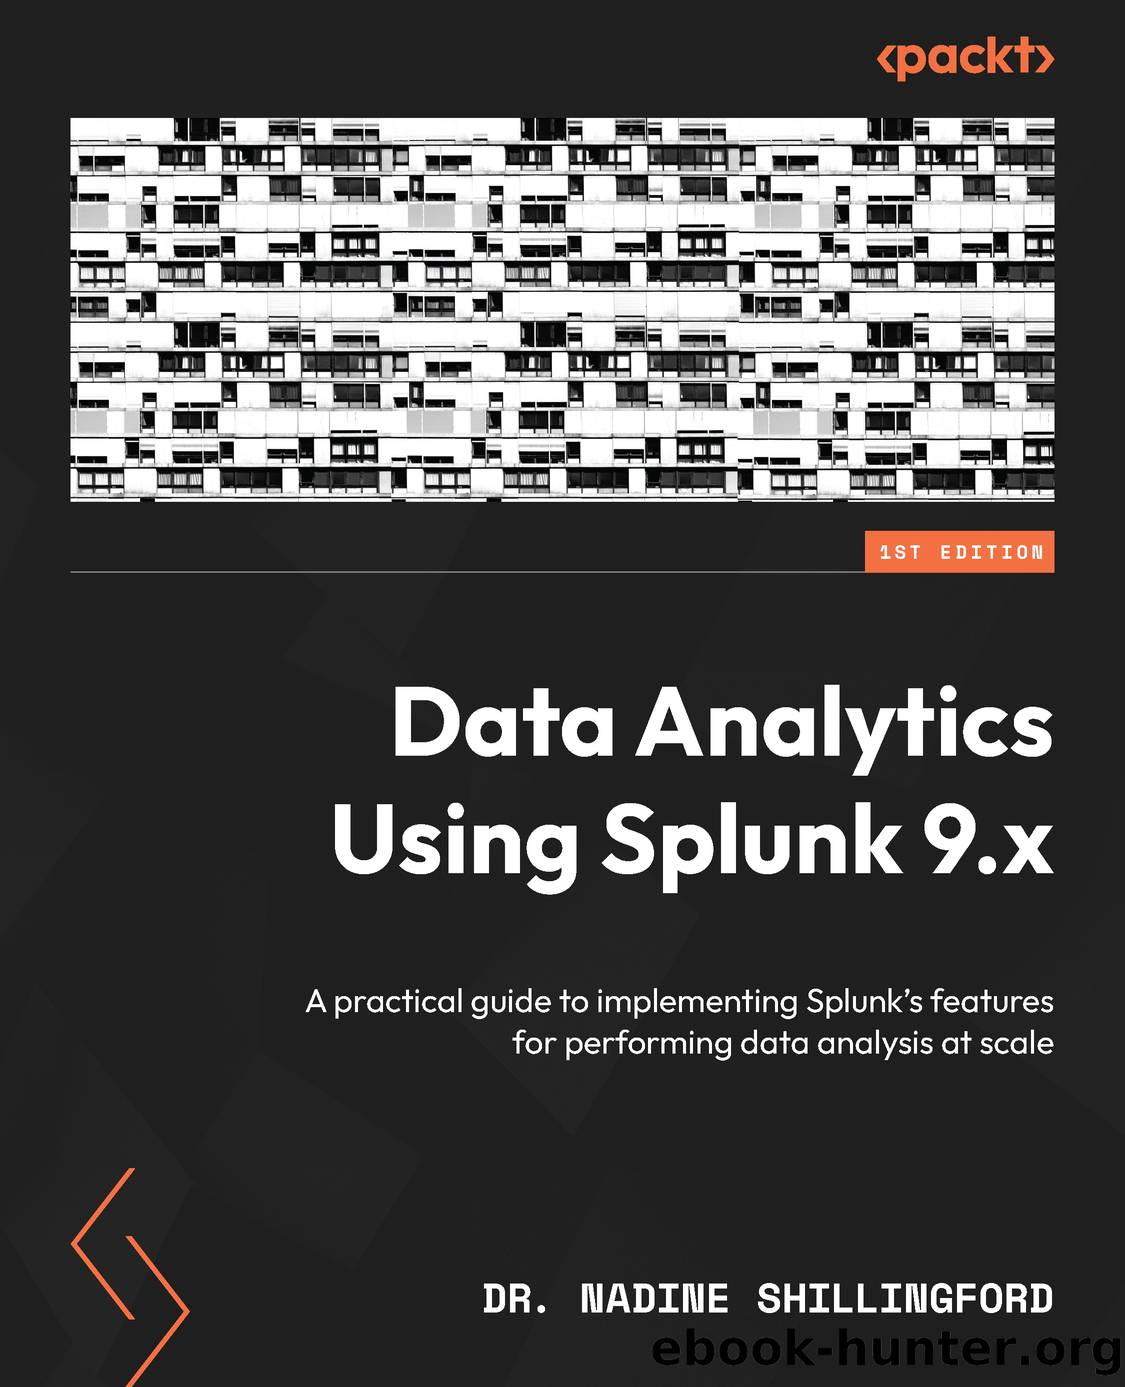 Data Analytics Using Splunk 9.x by Dr. Nadine Shillingford